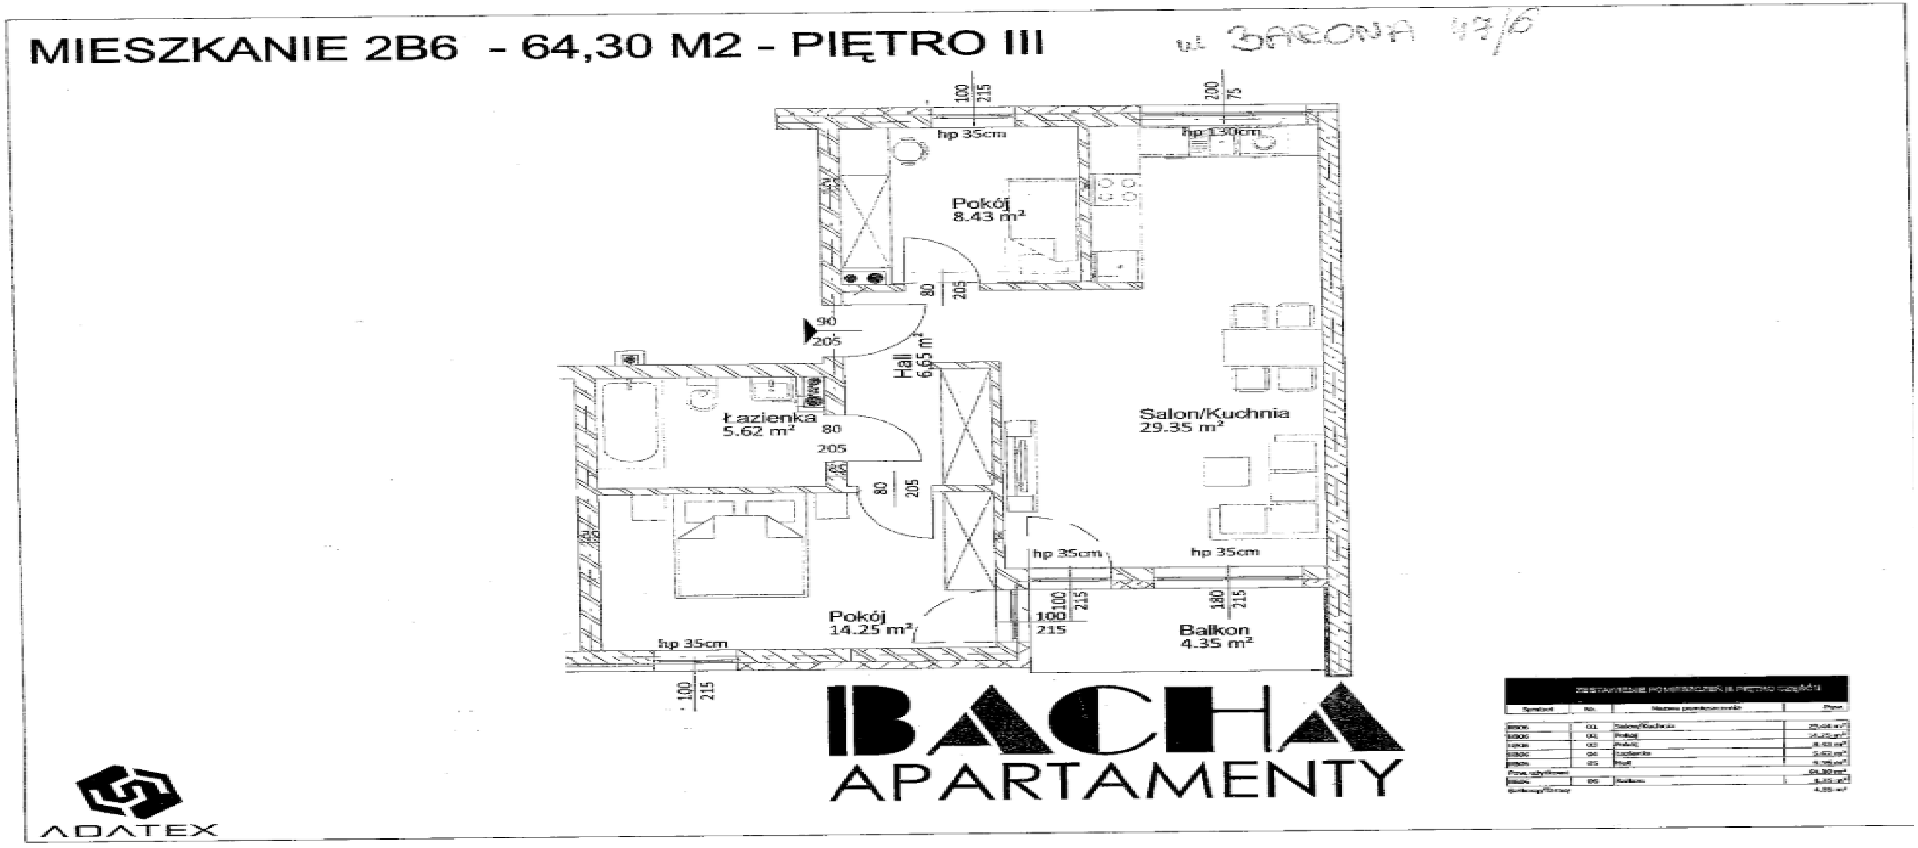 Apartament na sprzedaż Tychy ulica Barona. 64,3m2 Tychy - zdjęcie 2